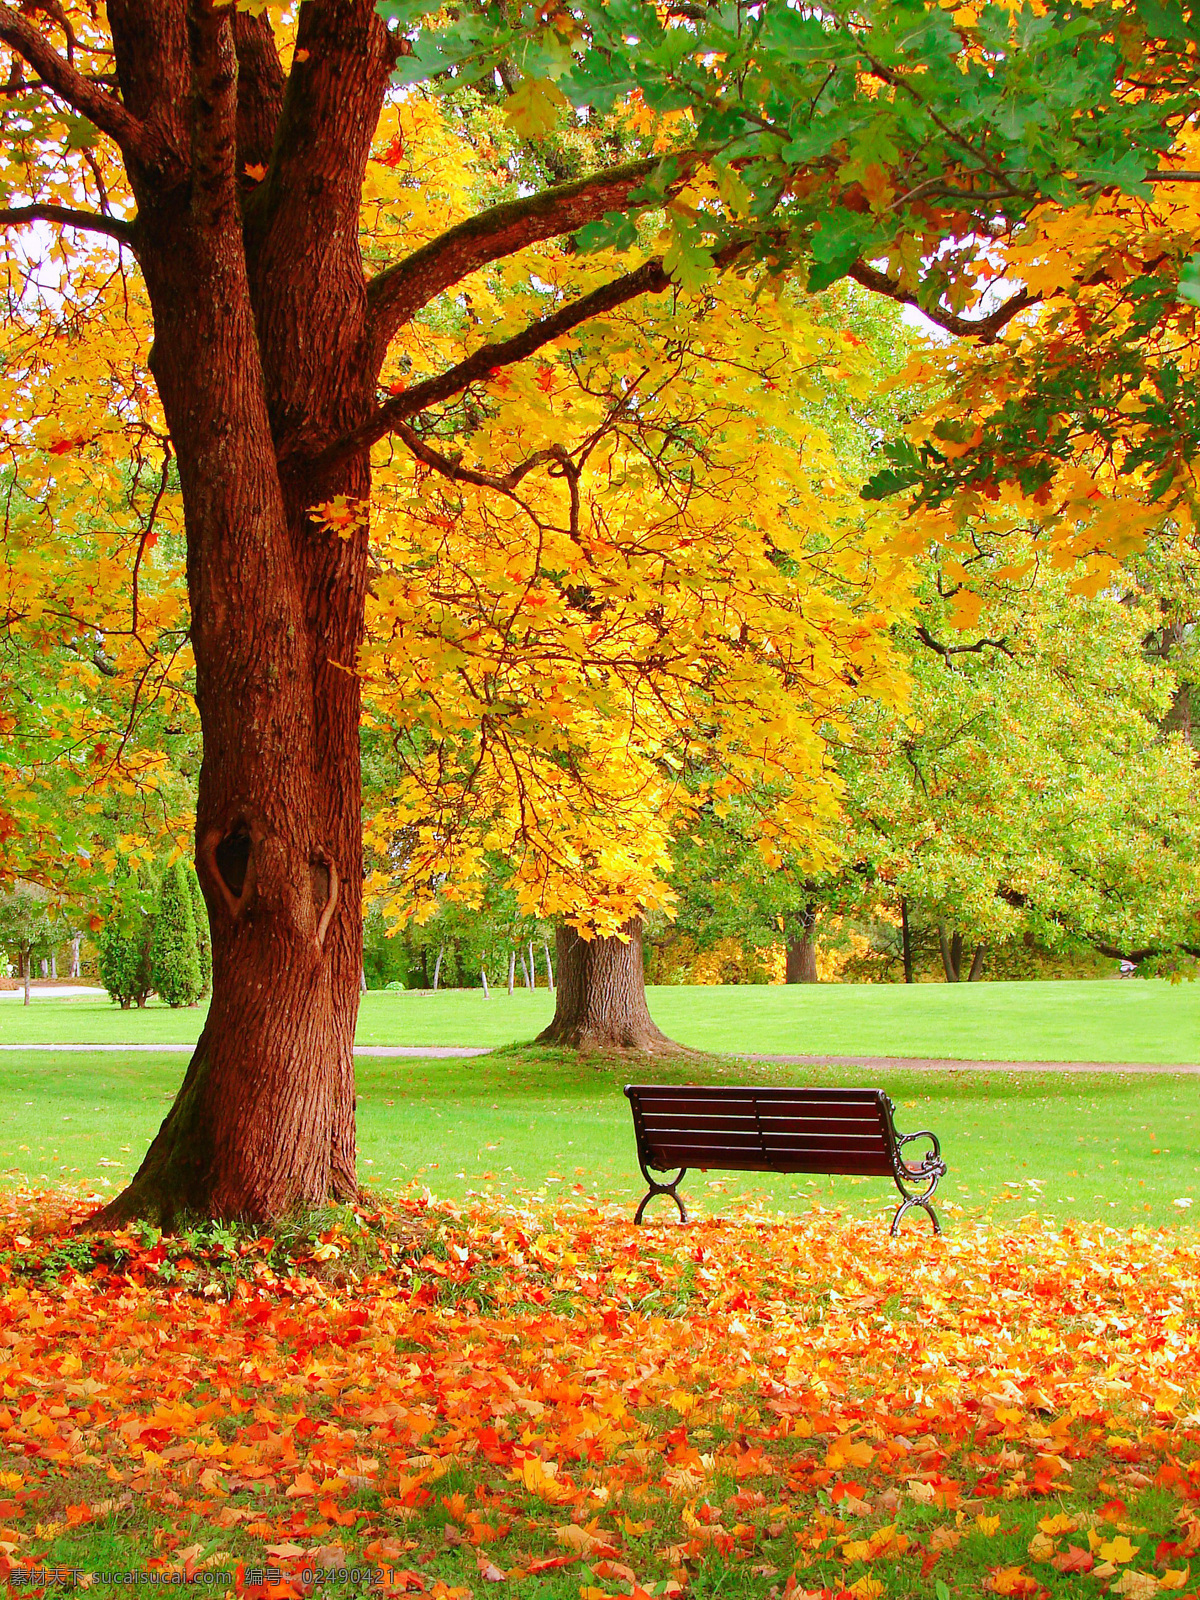 秋天 枫树 椅子 风景摄影 枫 树林 风景 枫叶 落叶 秋天树林风景 秋季美景 美丽风景 秋季景色 自然风景 自然景观 黄色